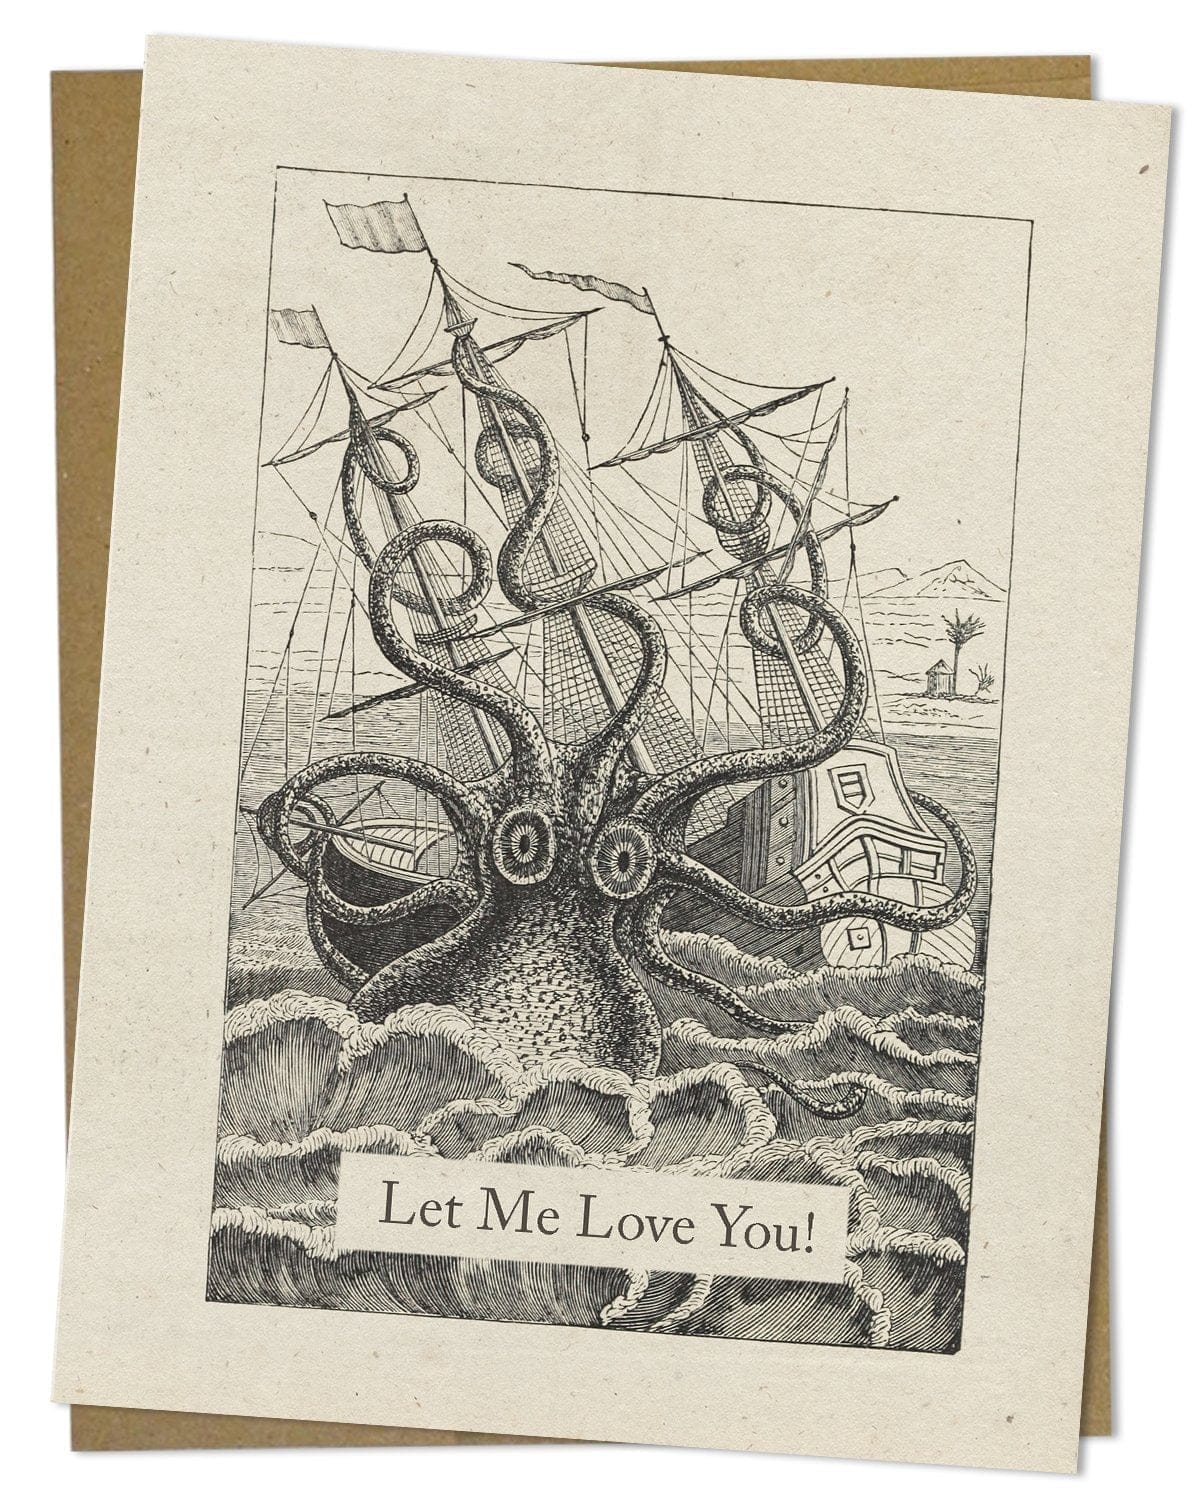 Let-Me-Love-You-Octopus-Card-Cognitive-Surplus-899_cbaeb9d0-c90c-40e2-8836-b55ec2dbc389.jpg